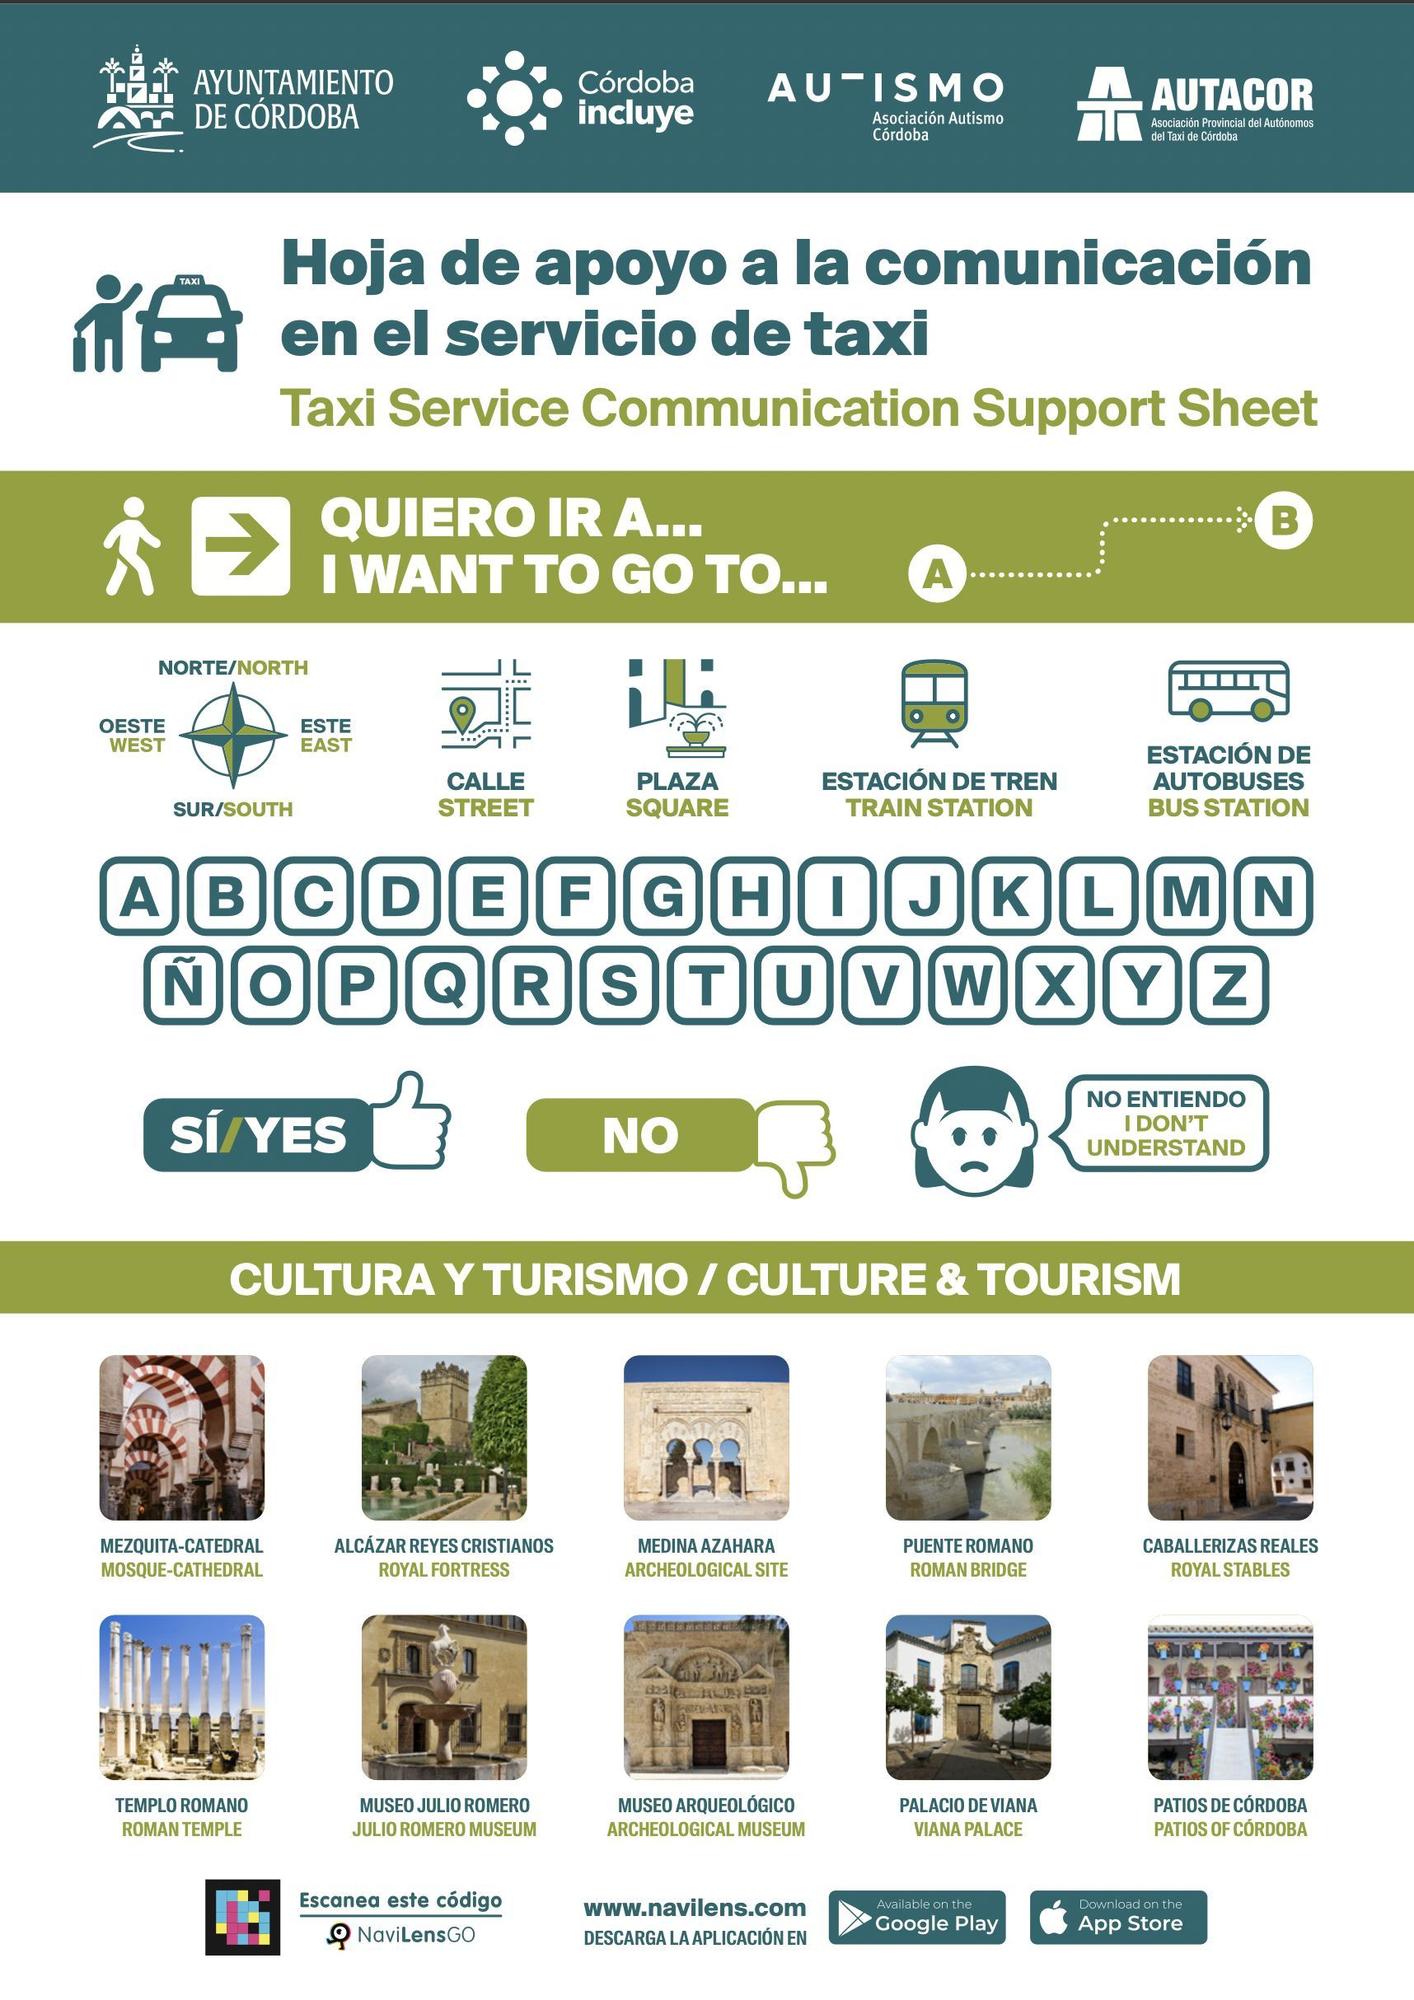 Hoja de apoyo a la comunicación en el servicio del taxi.